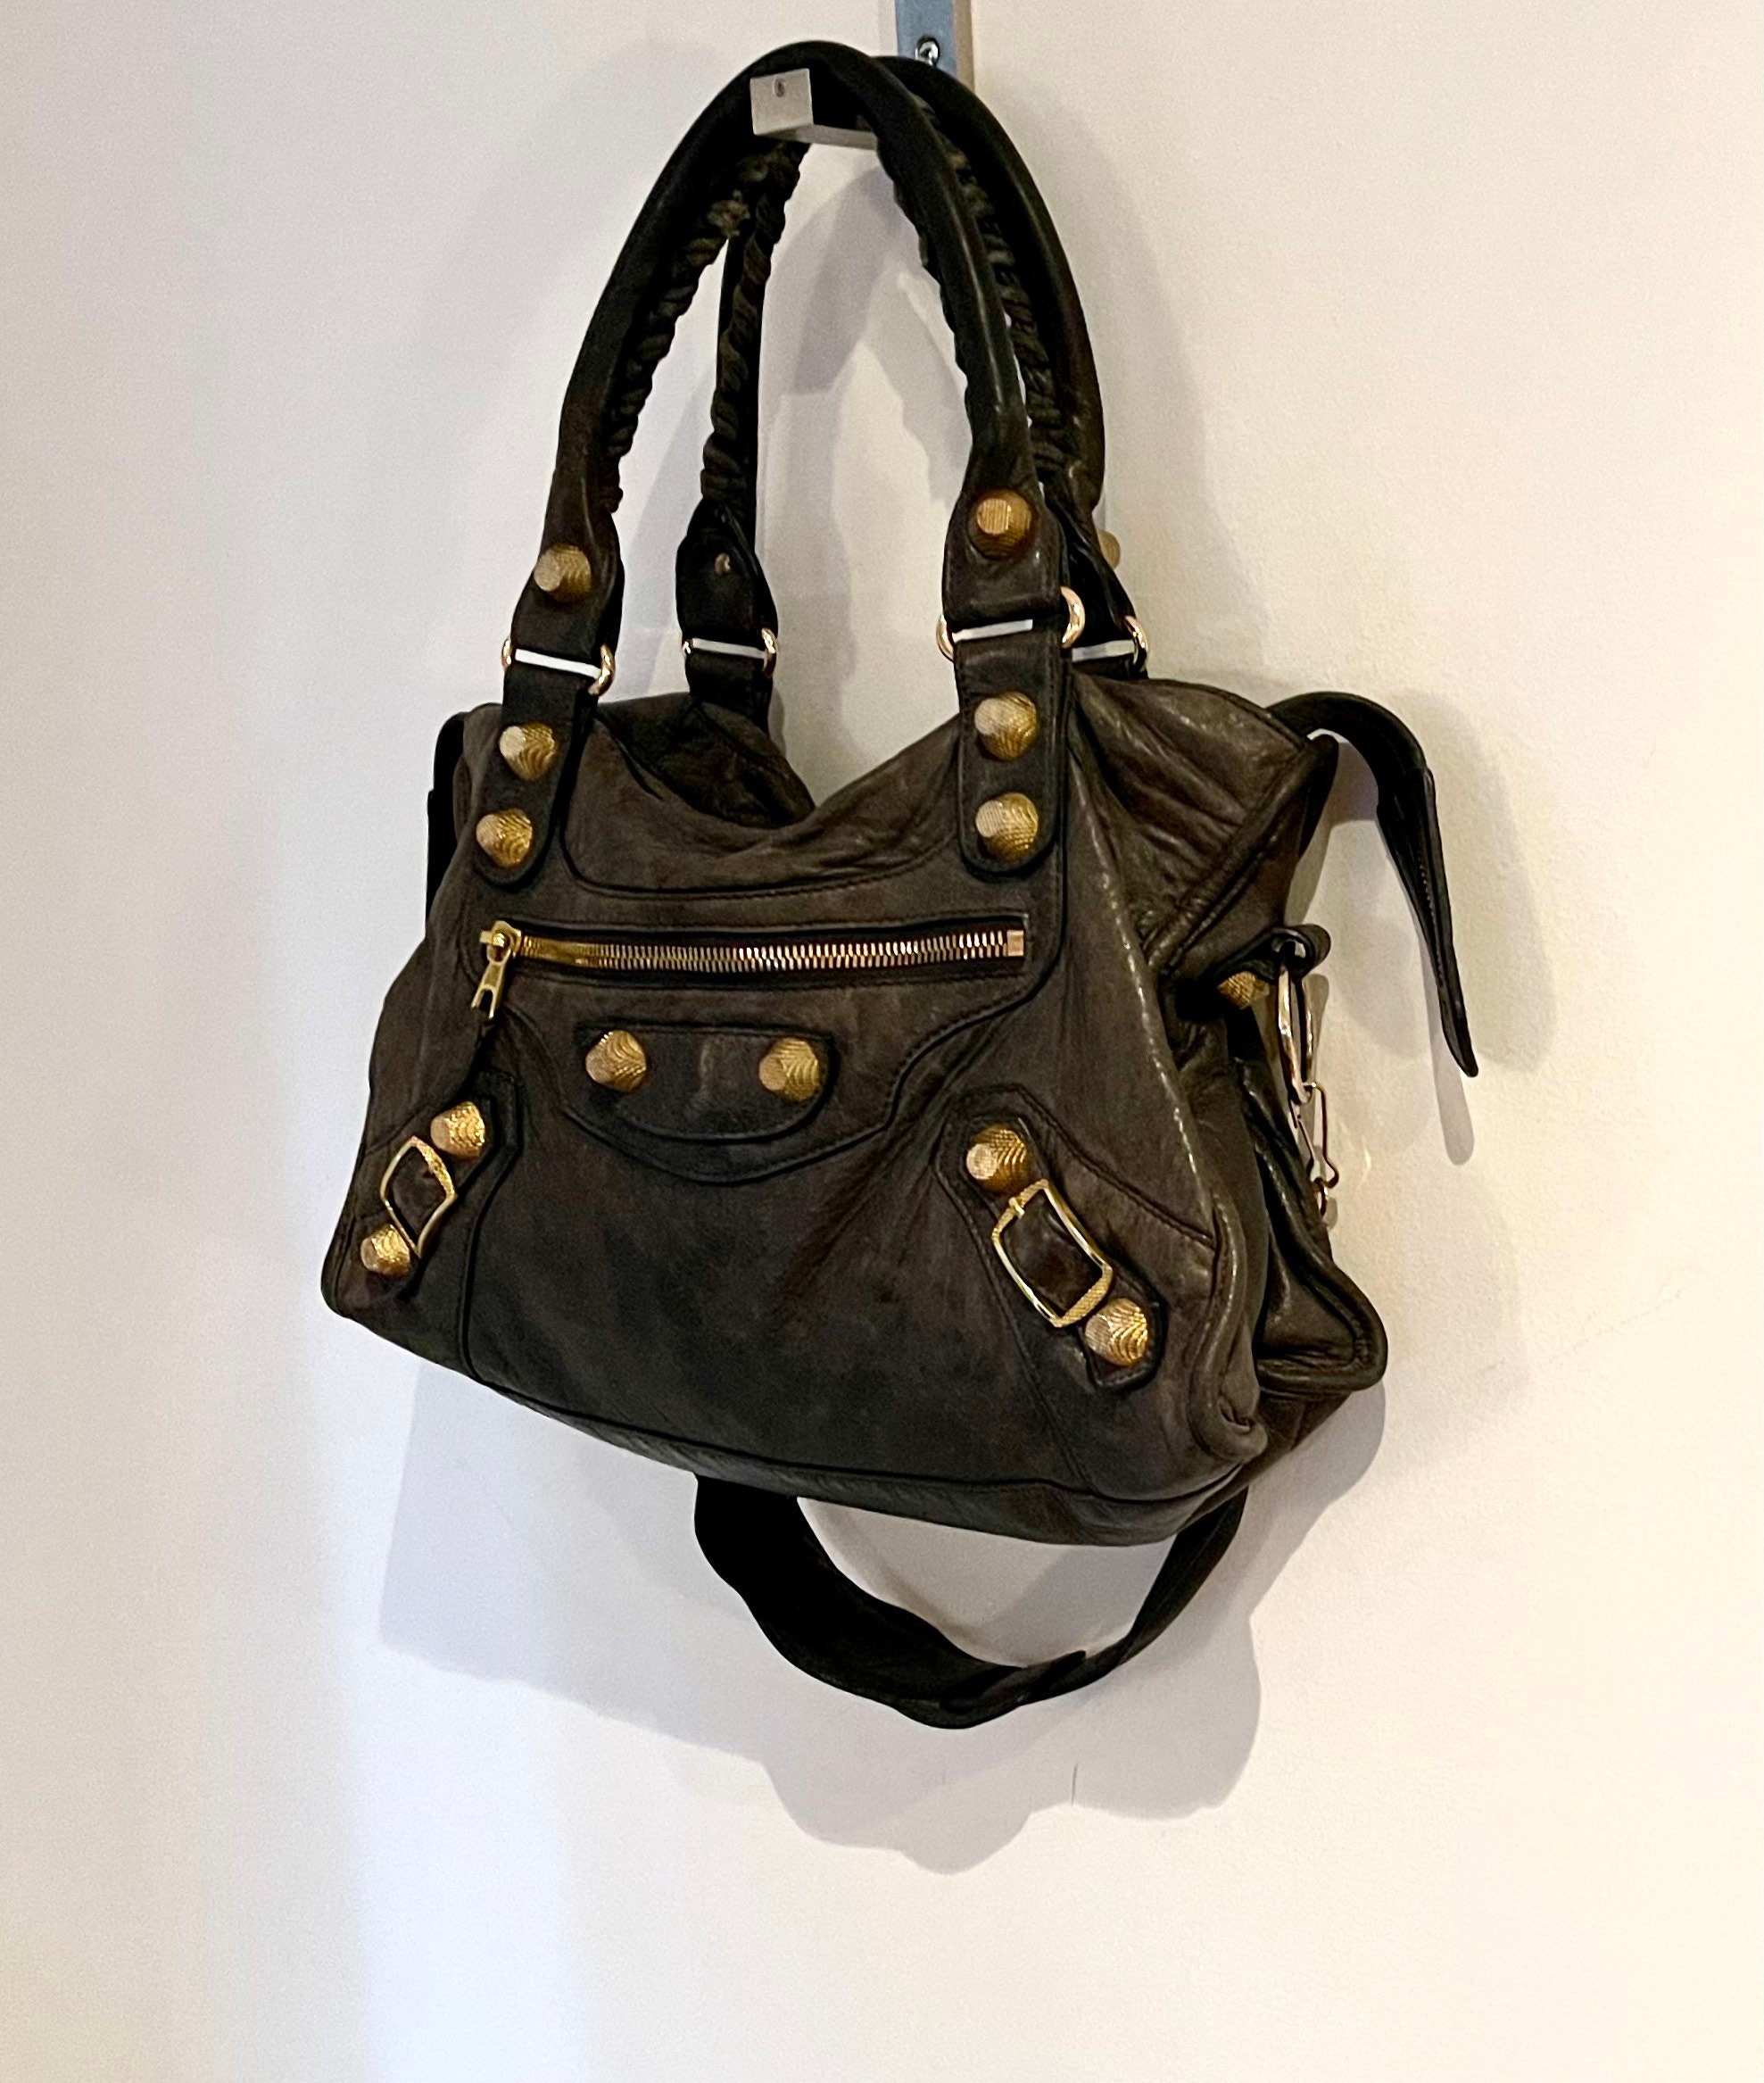 Vintage Balenciaga Bag Gray Leather Balenciaga Handbag - Etsy